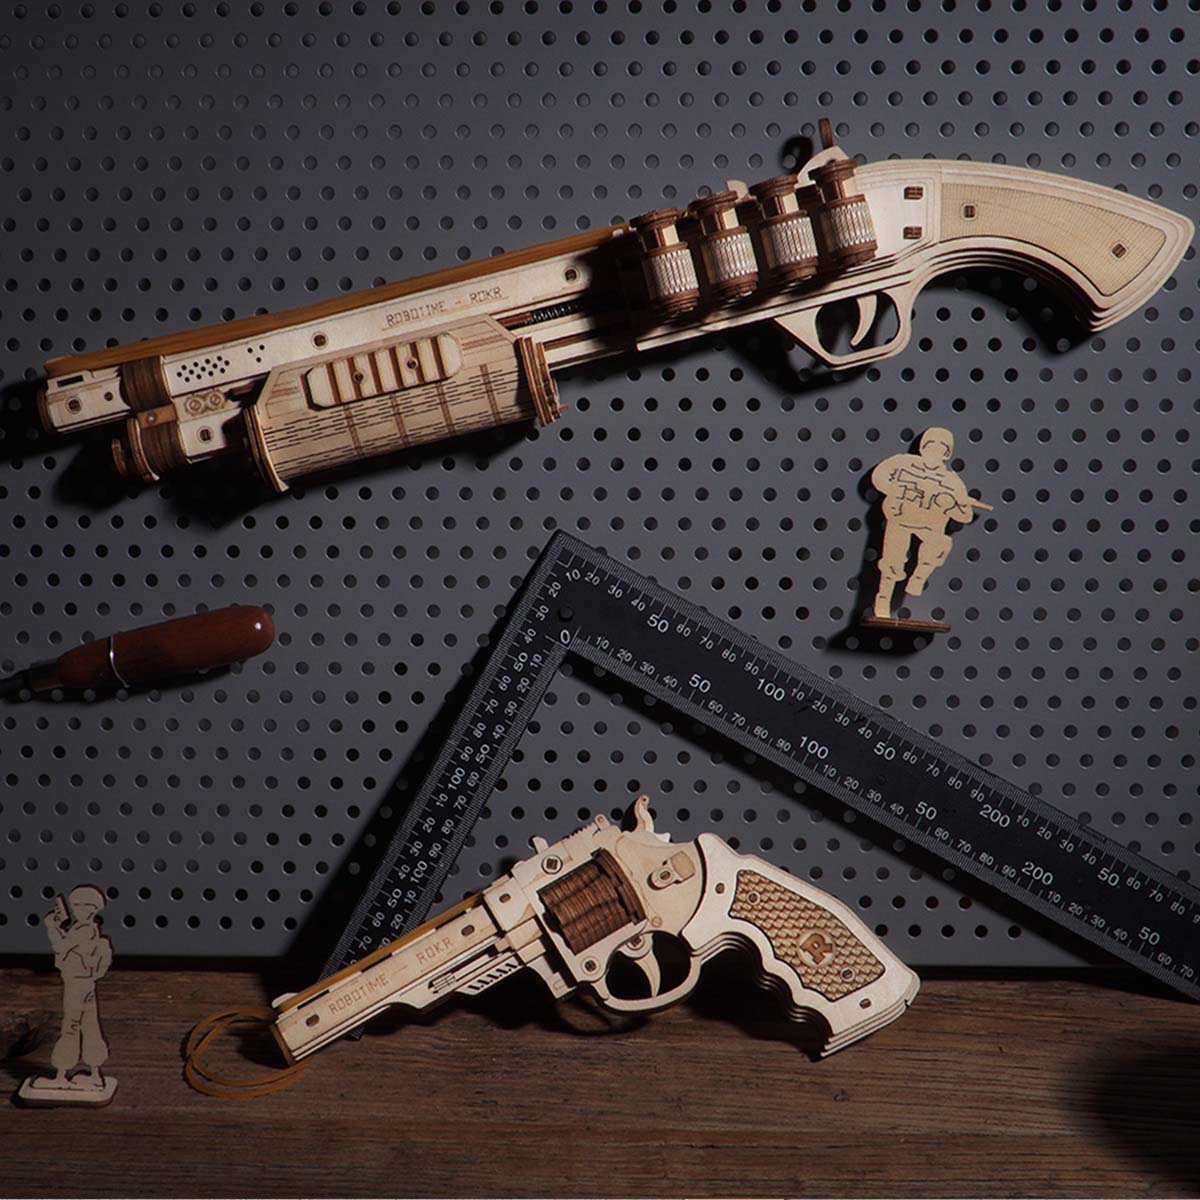 Robtiendra me-Fusil automatique Roshi AK47 3D en bois, jouet amusant,  bricolage, construction de nuits, pour